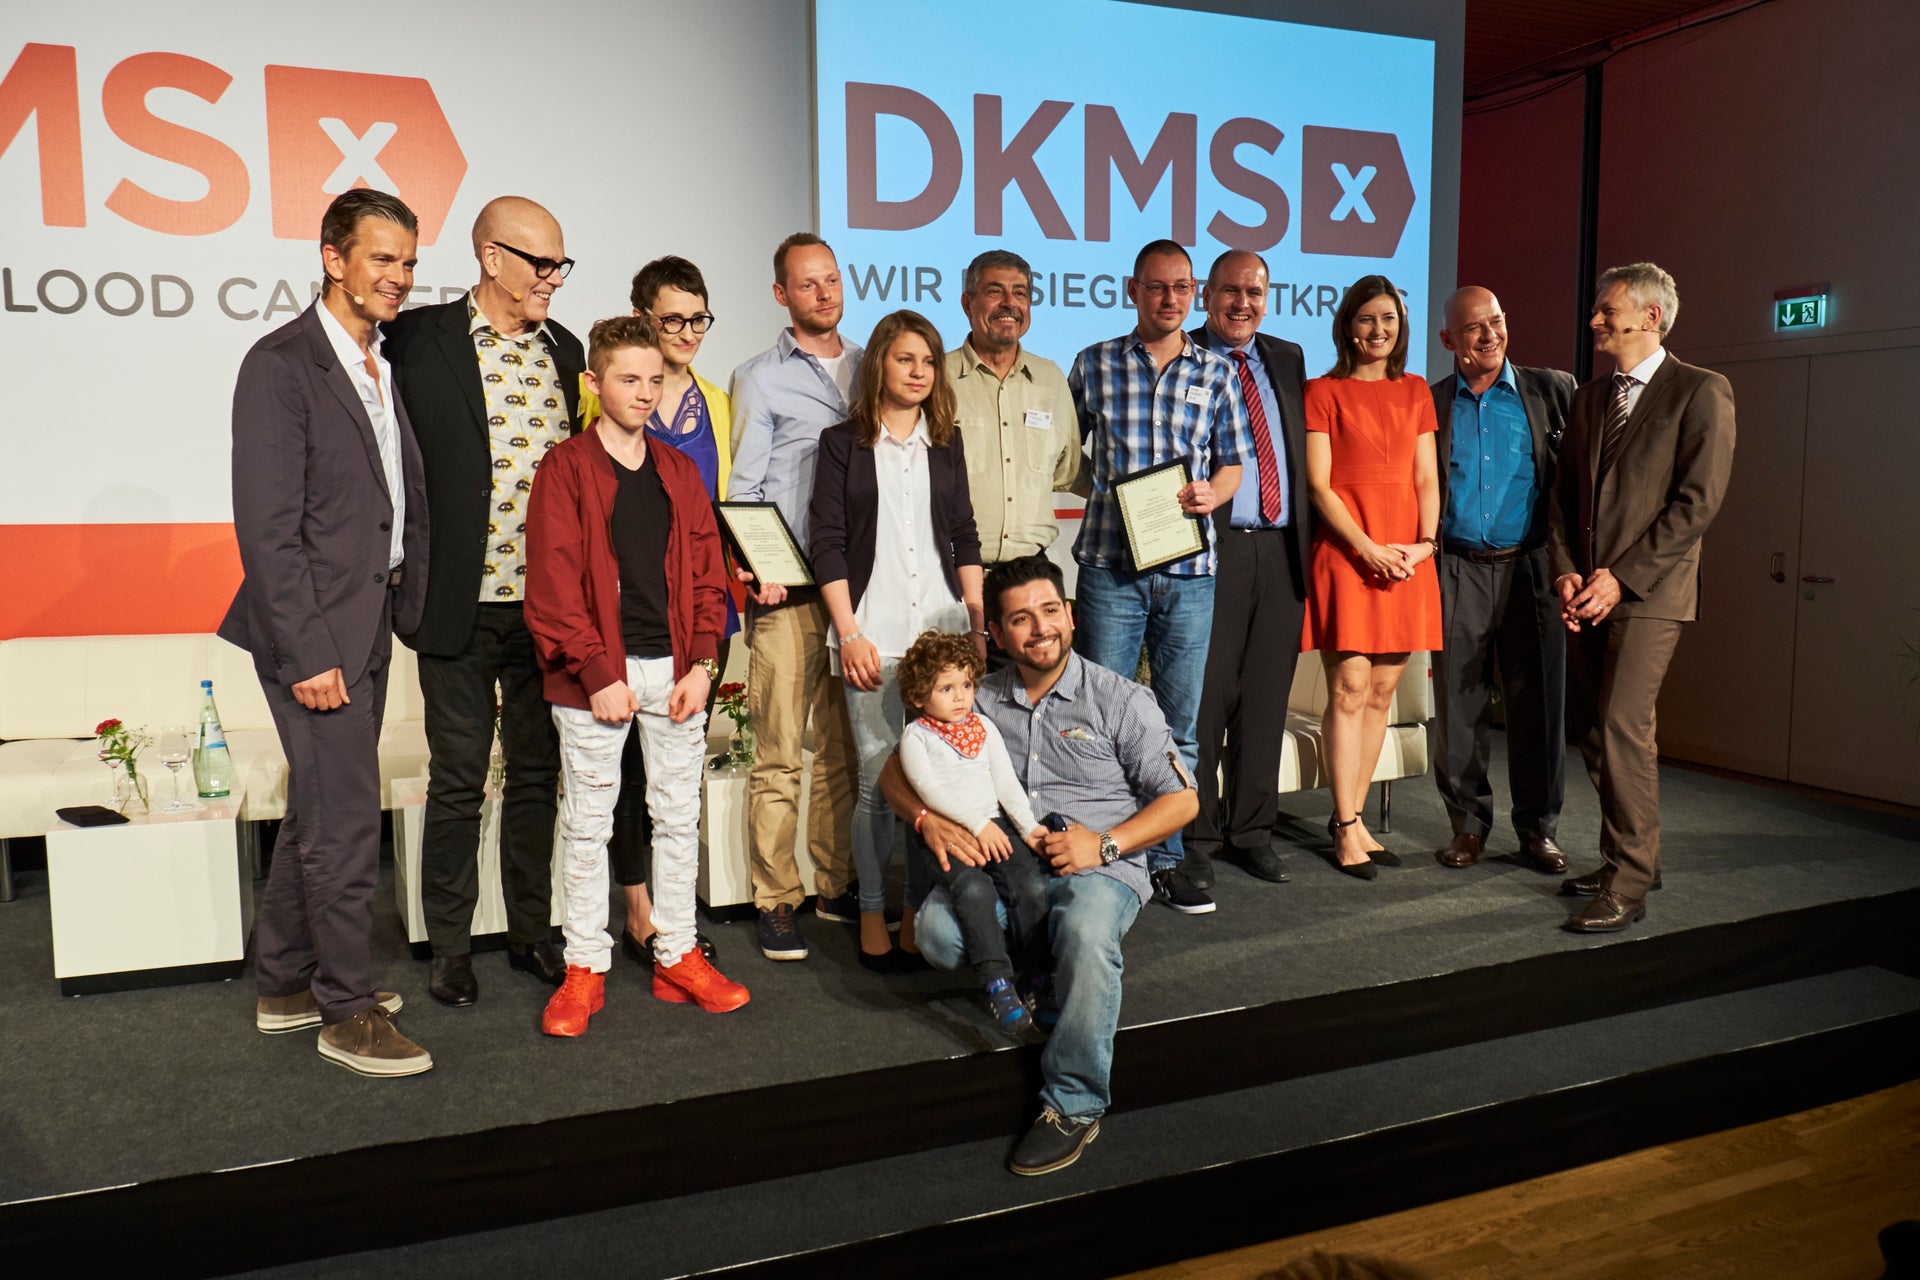 Gruppenbild beim Pressegespräch zu 25 Jahre DKMS mit Moderator Markus Lanz